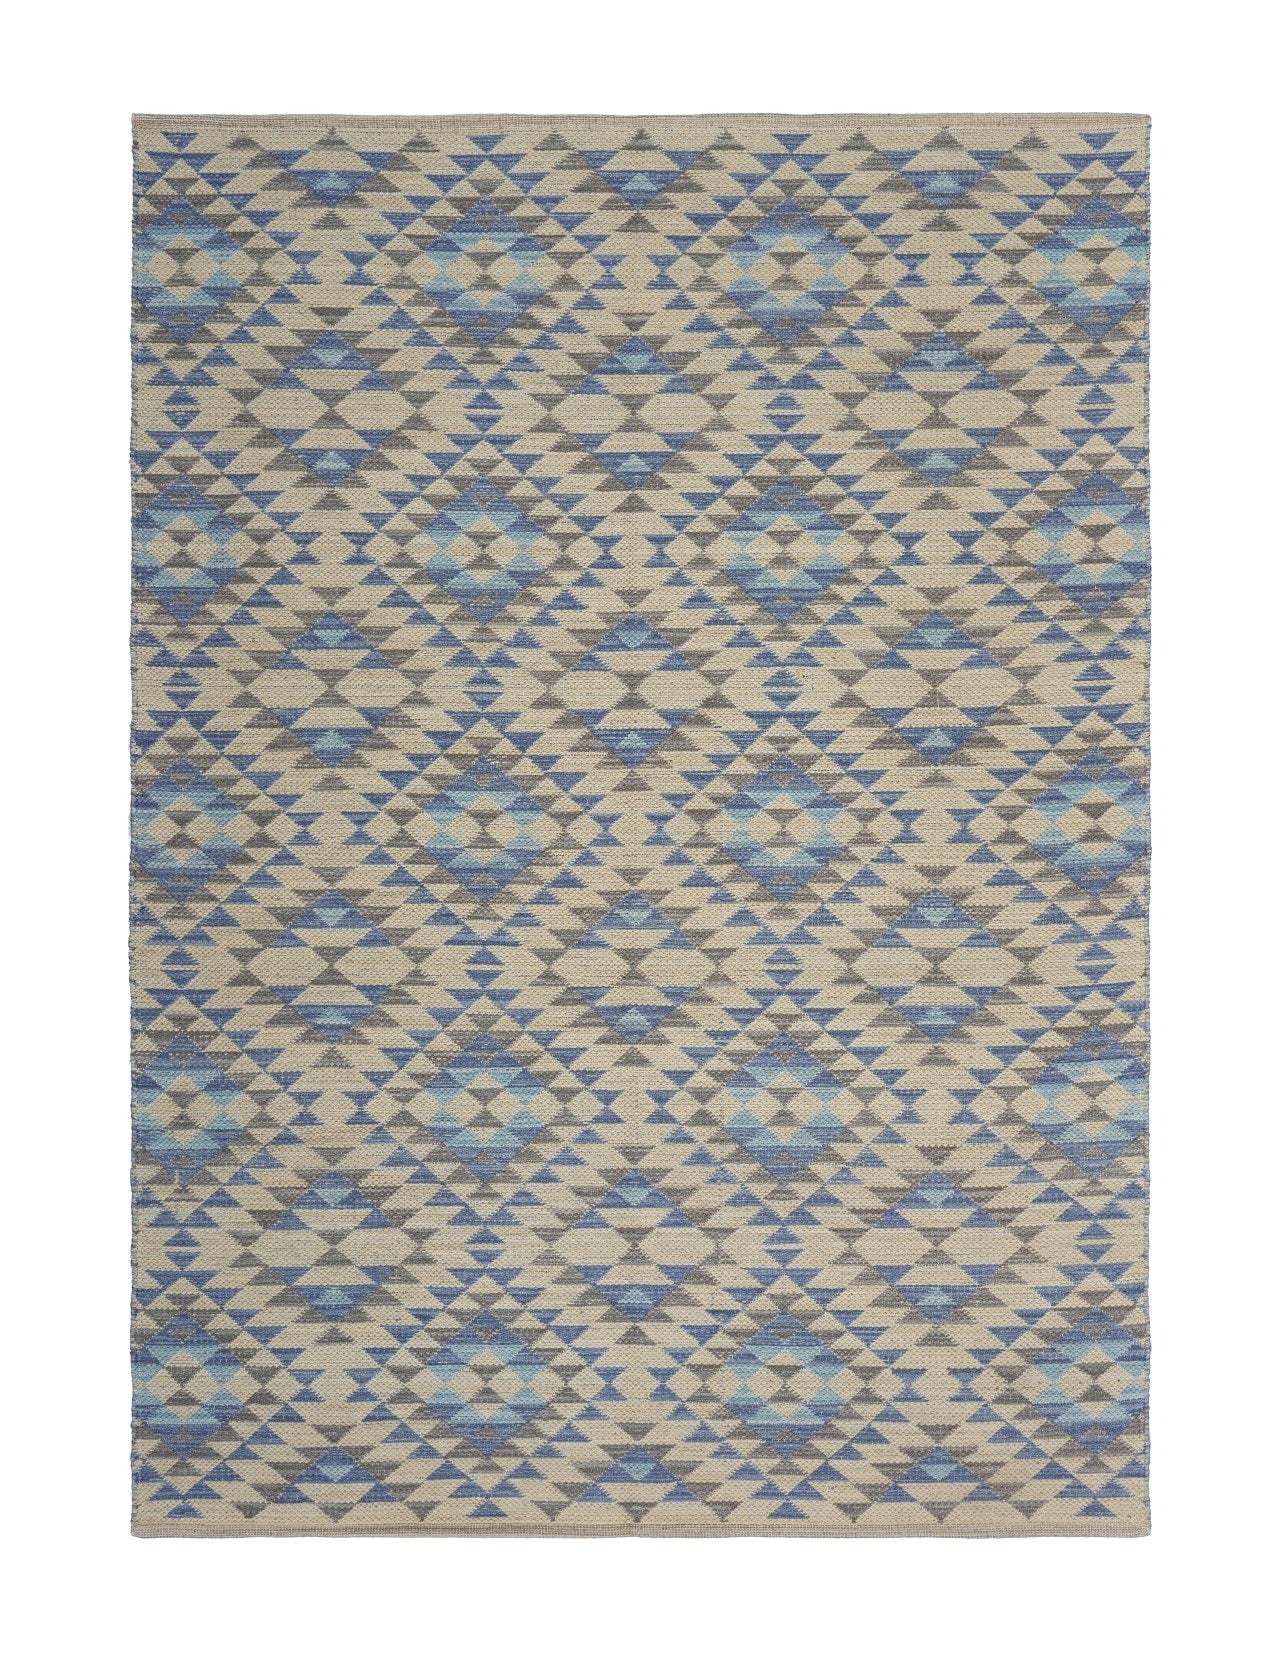 3’ x 5’ Blue Decorative Lattice Area Rug